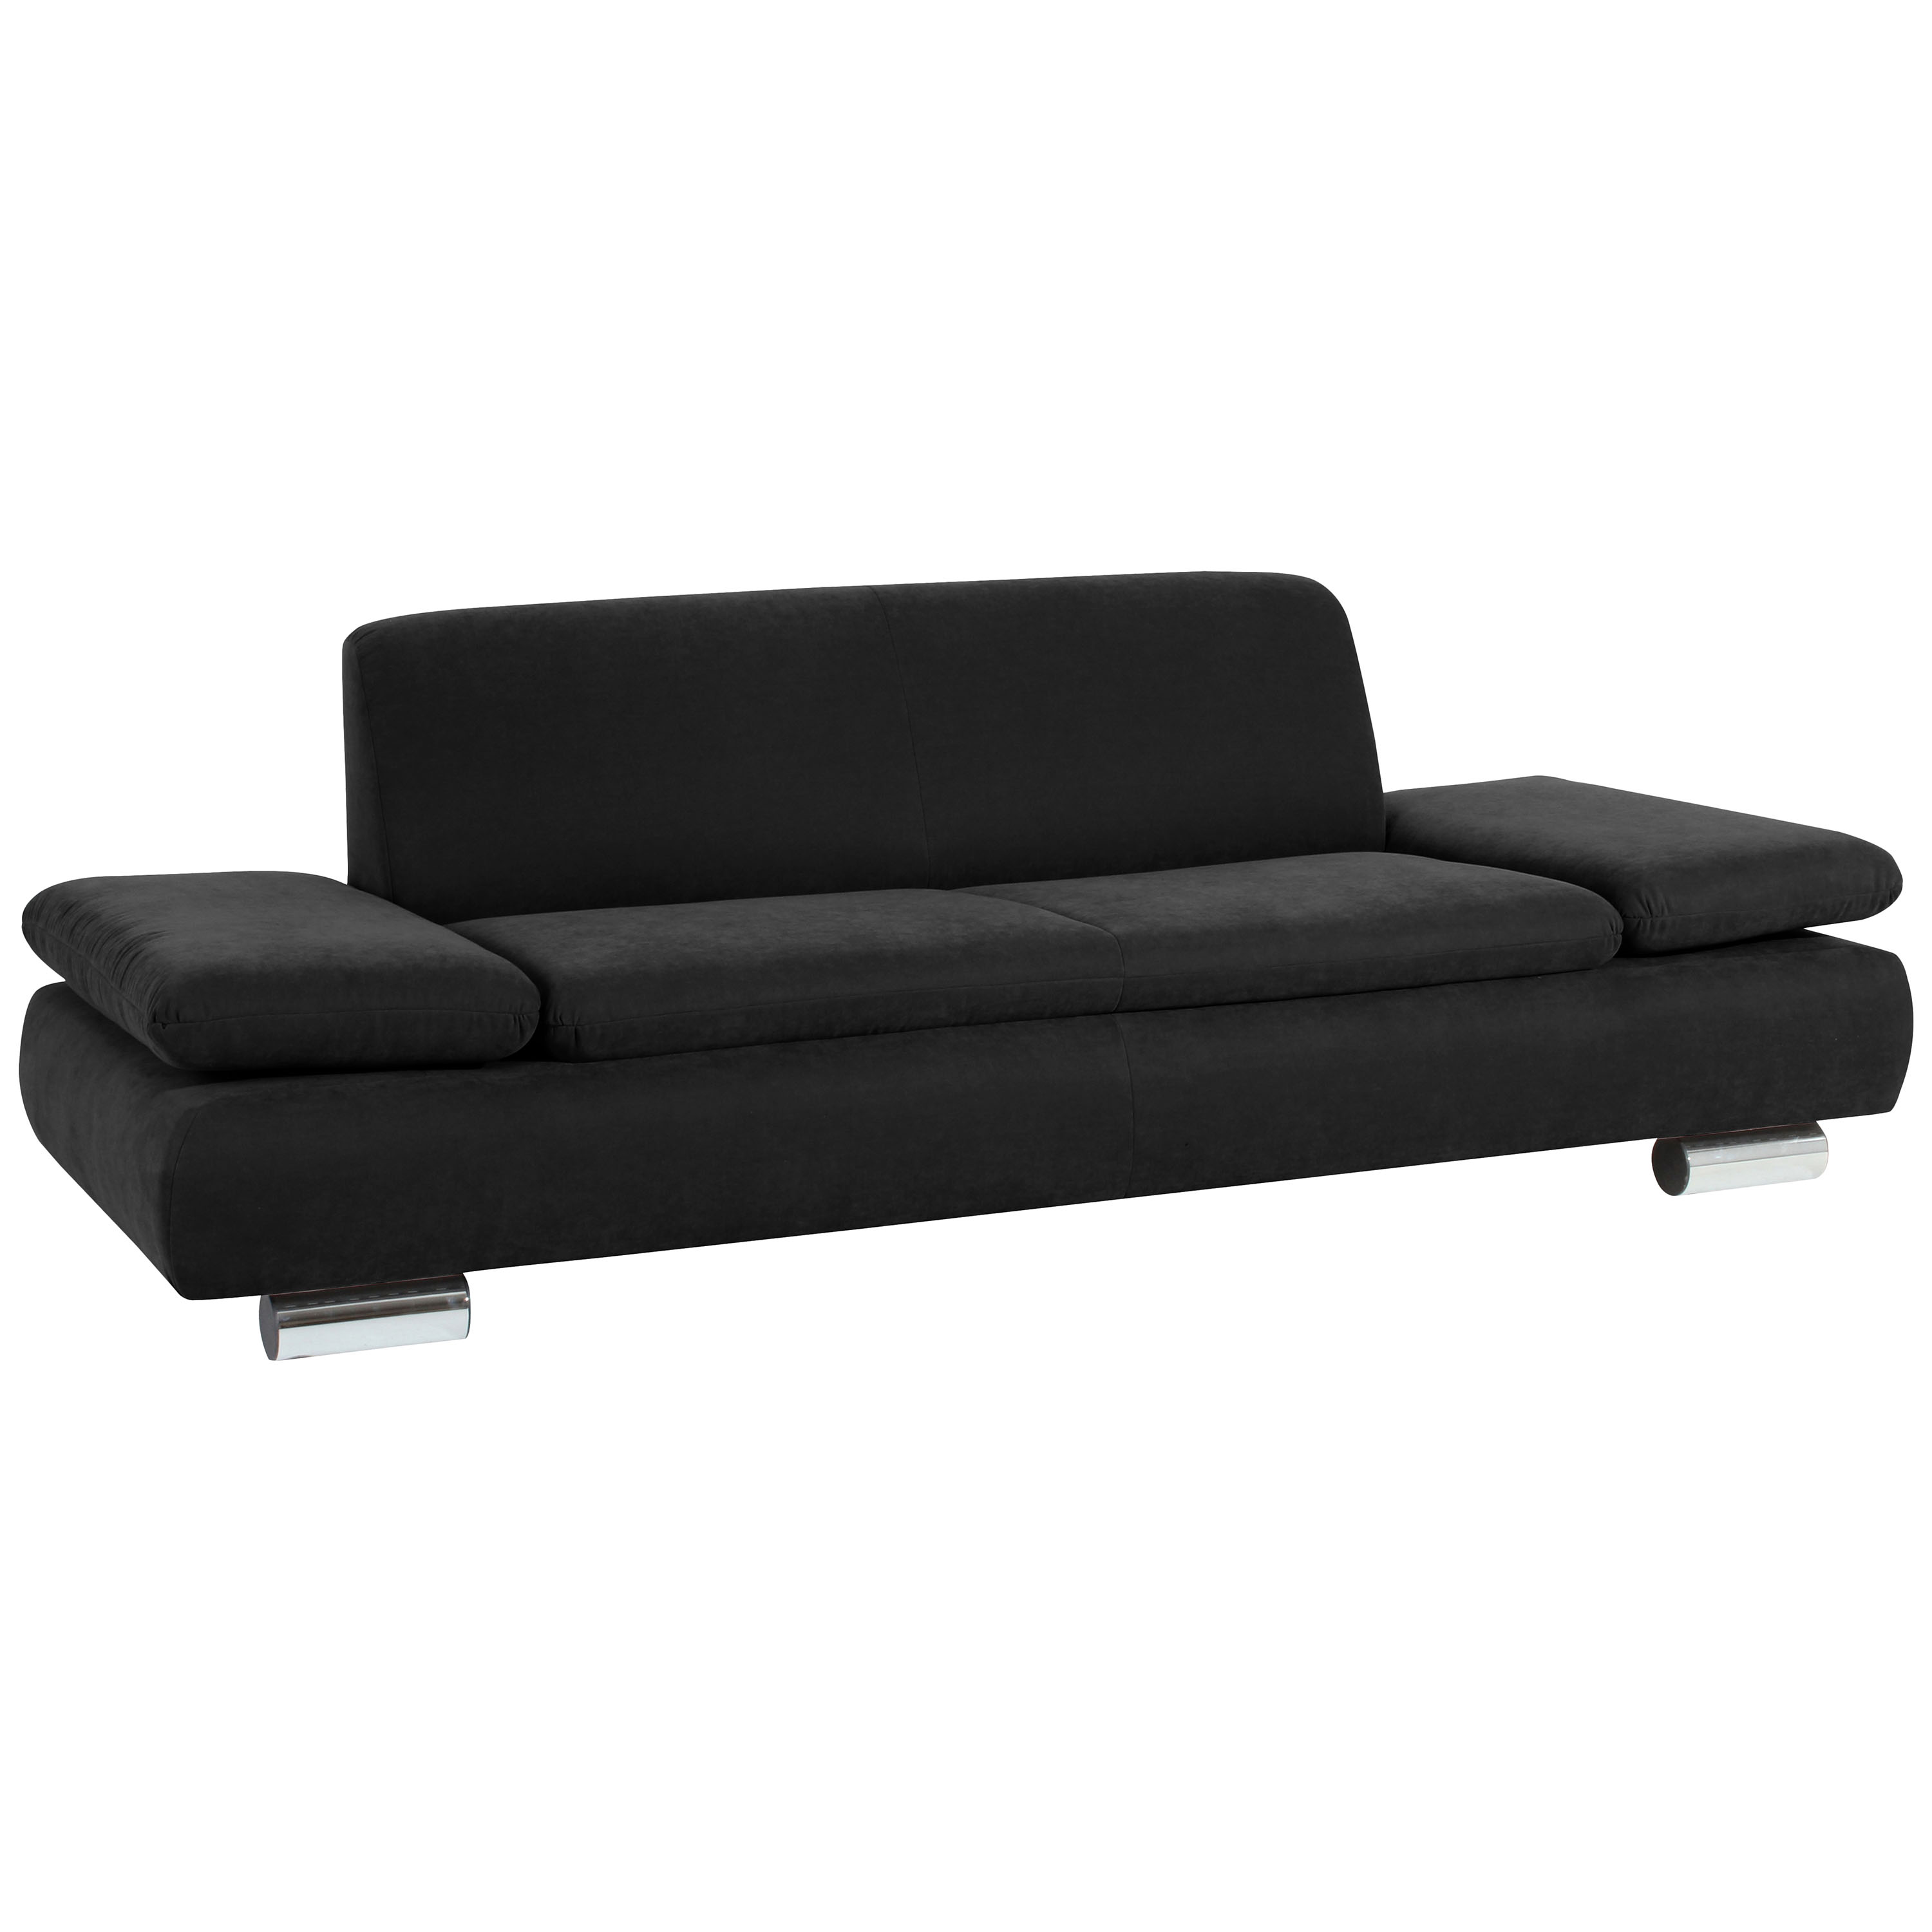 gemütliches schwarzes 2,5-sitzer sofa mit verchromten metallfüssen